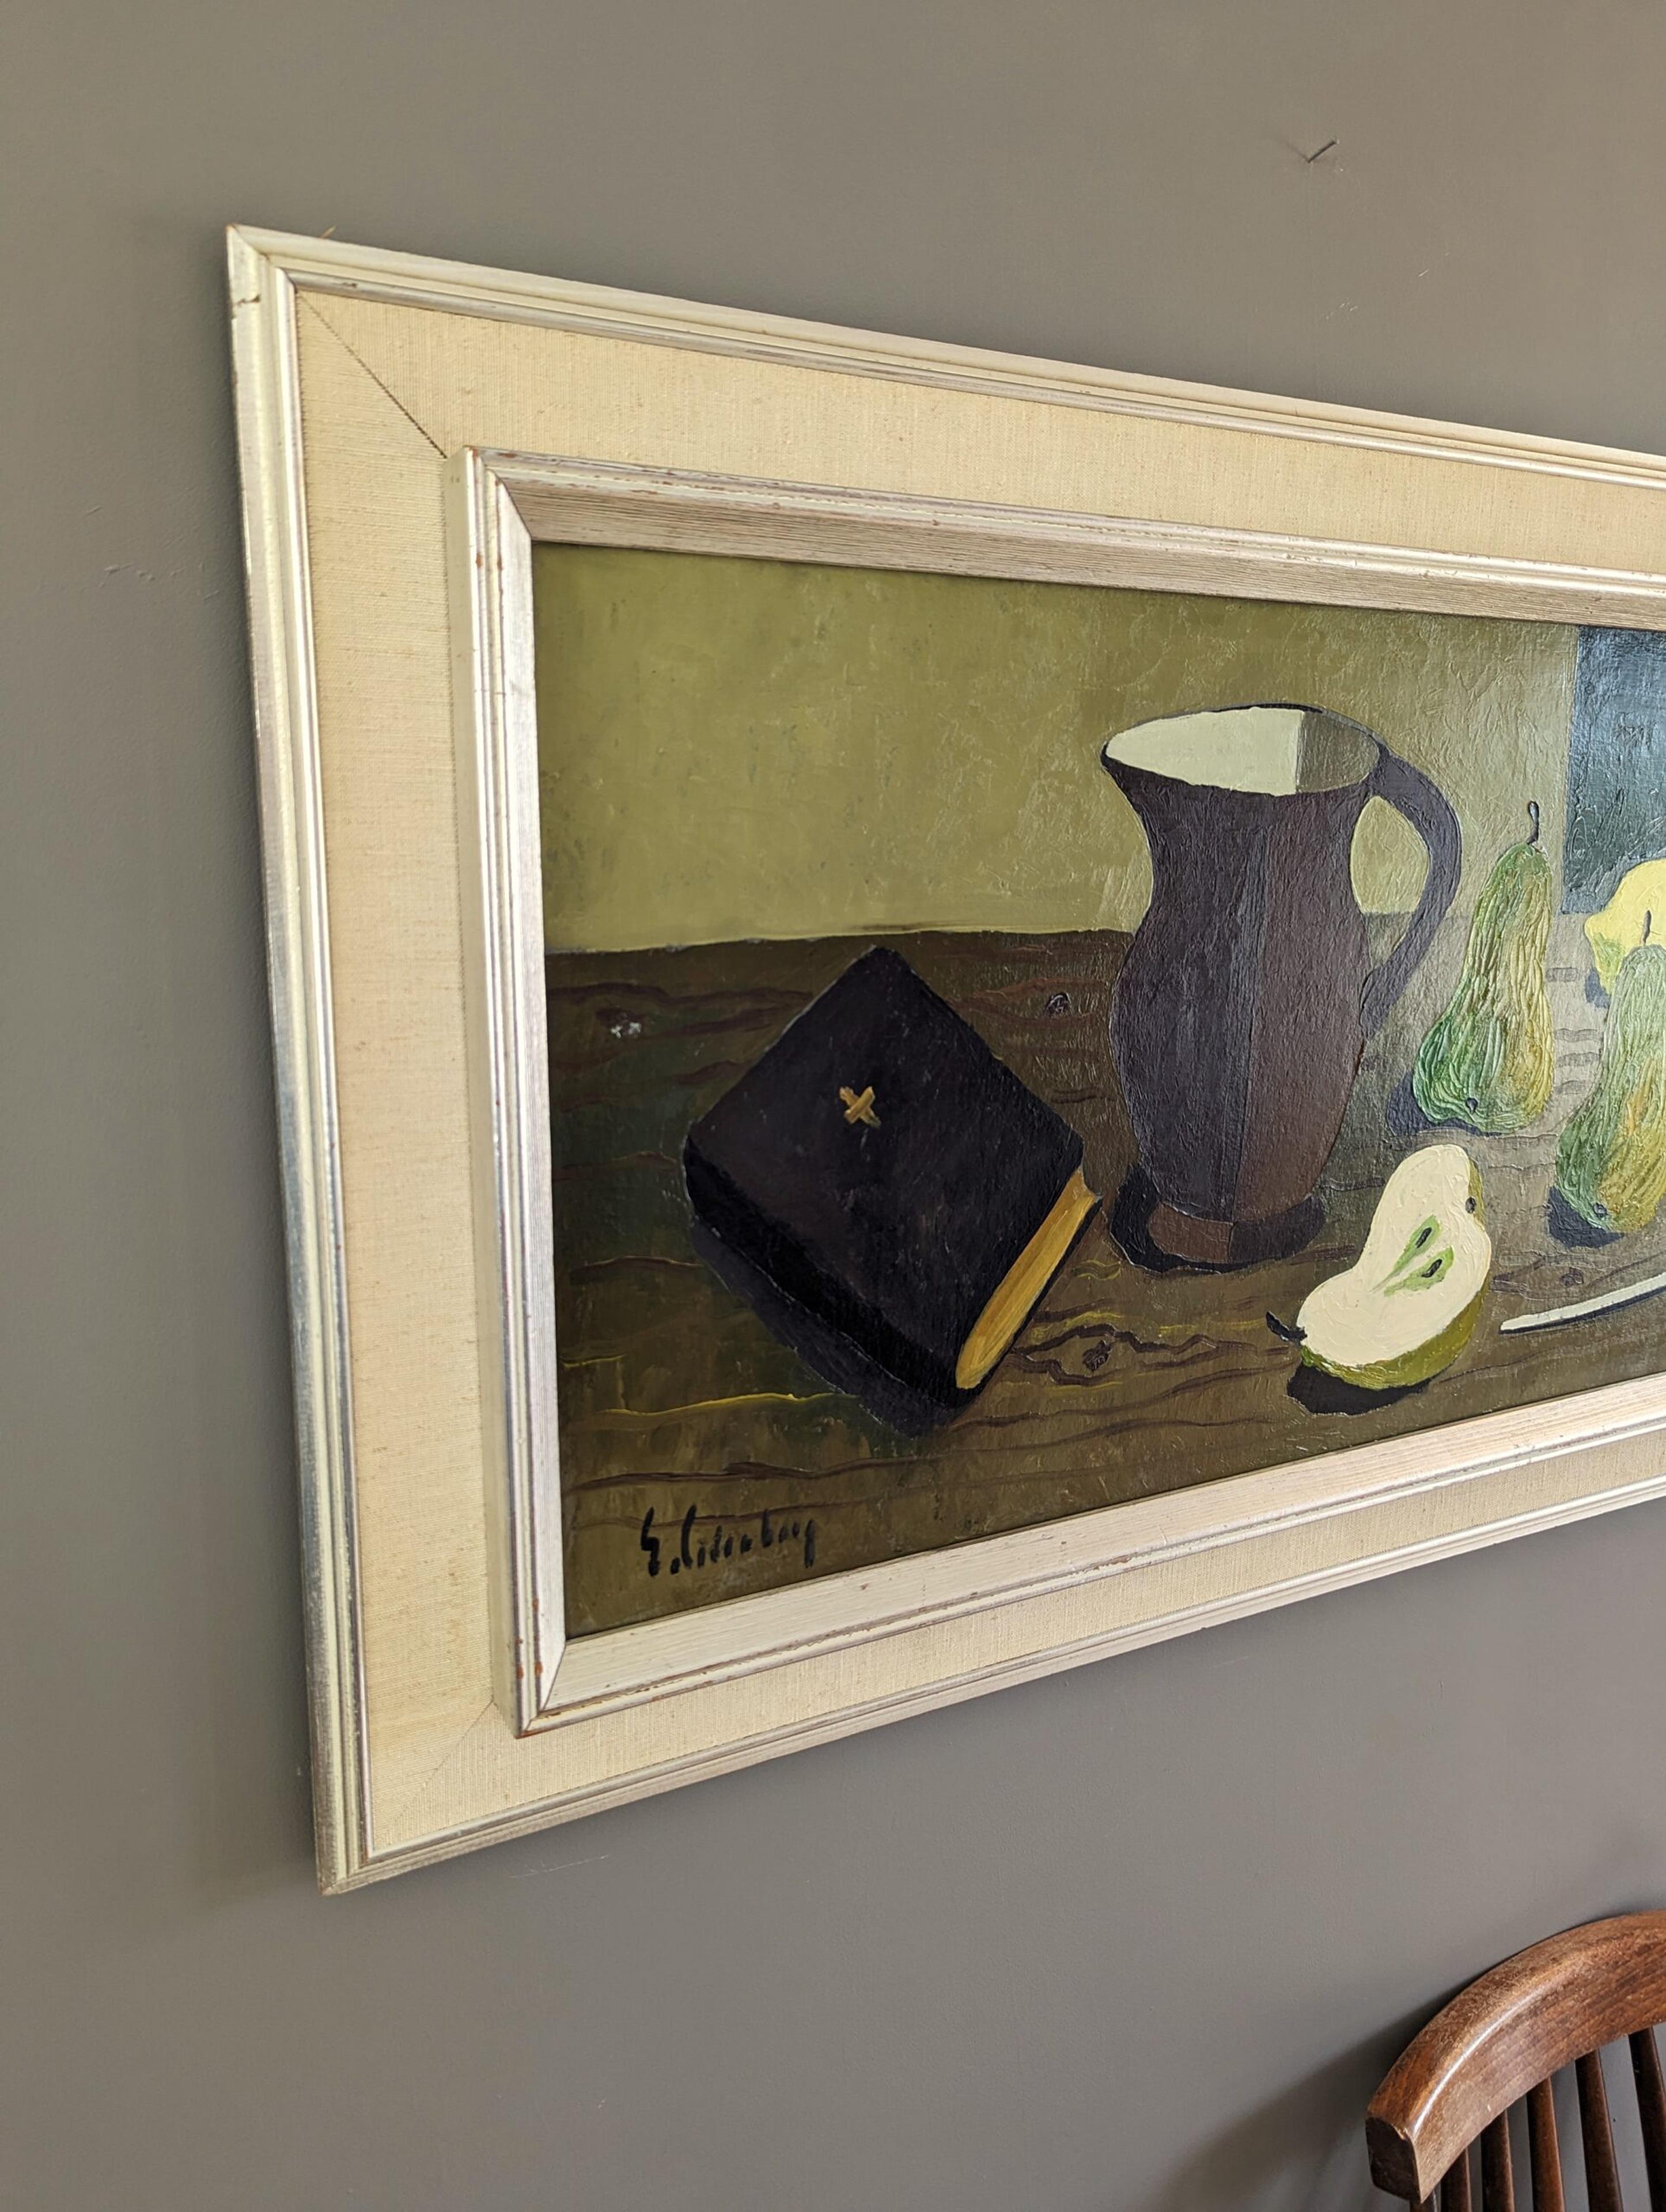 PIPE & PEARS
Größe: 49,5 x 79,5 cm (einschließlich Rahmen)
Öl auf Karton

Ein brillant ausgeführtes und charaktervolles Ölstillleben aus der Mitte des Jahrhunderts, gemalt von dem bekannten schwedischen Künstler Eric Cederberg (1897-1984), dessen